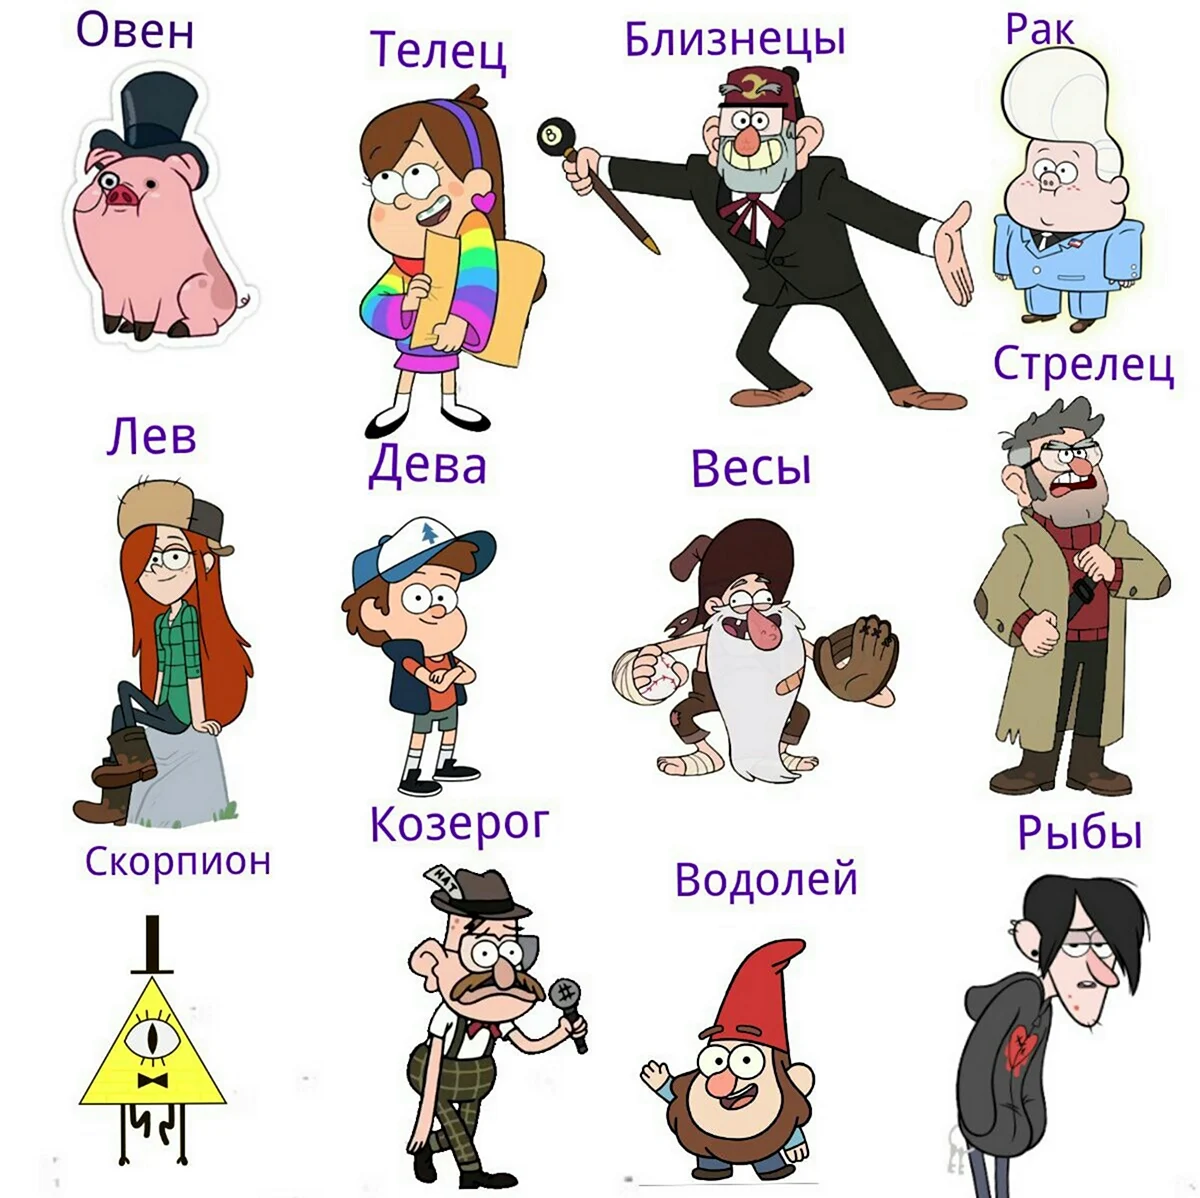 Гравити Фолз персонажи и их имена. Картинка из мультфильма